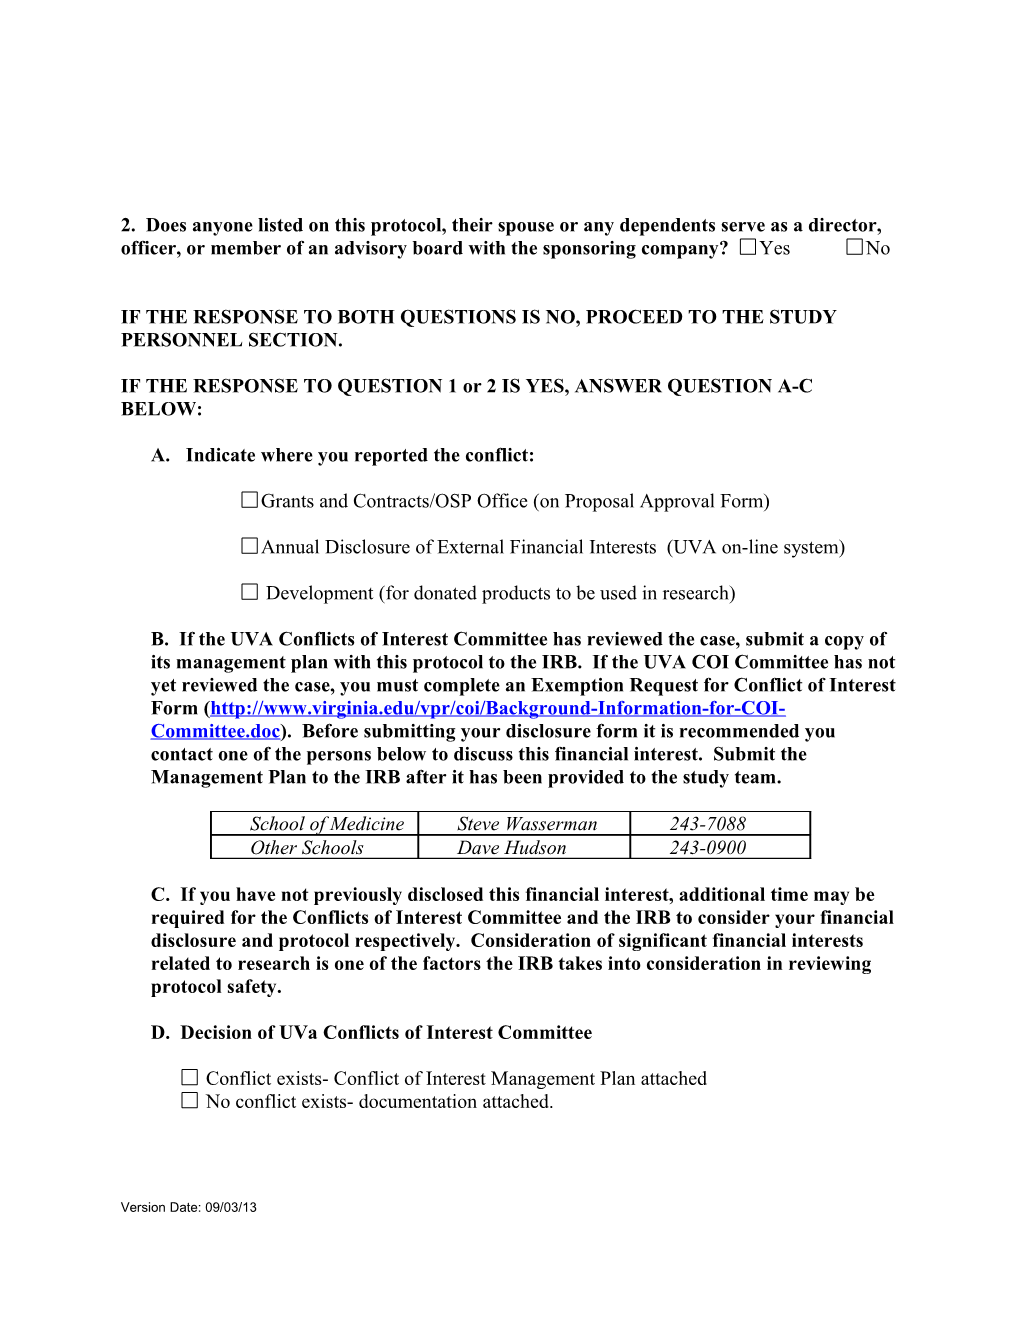 IRB-HSR/ Fred Hutchinson CIRB Protocol Information & Application Form